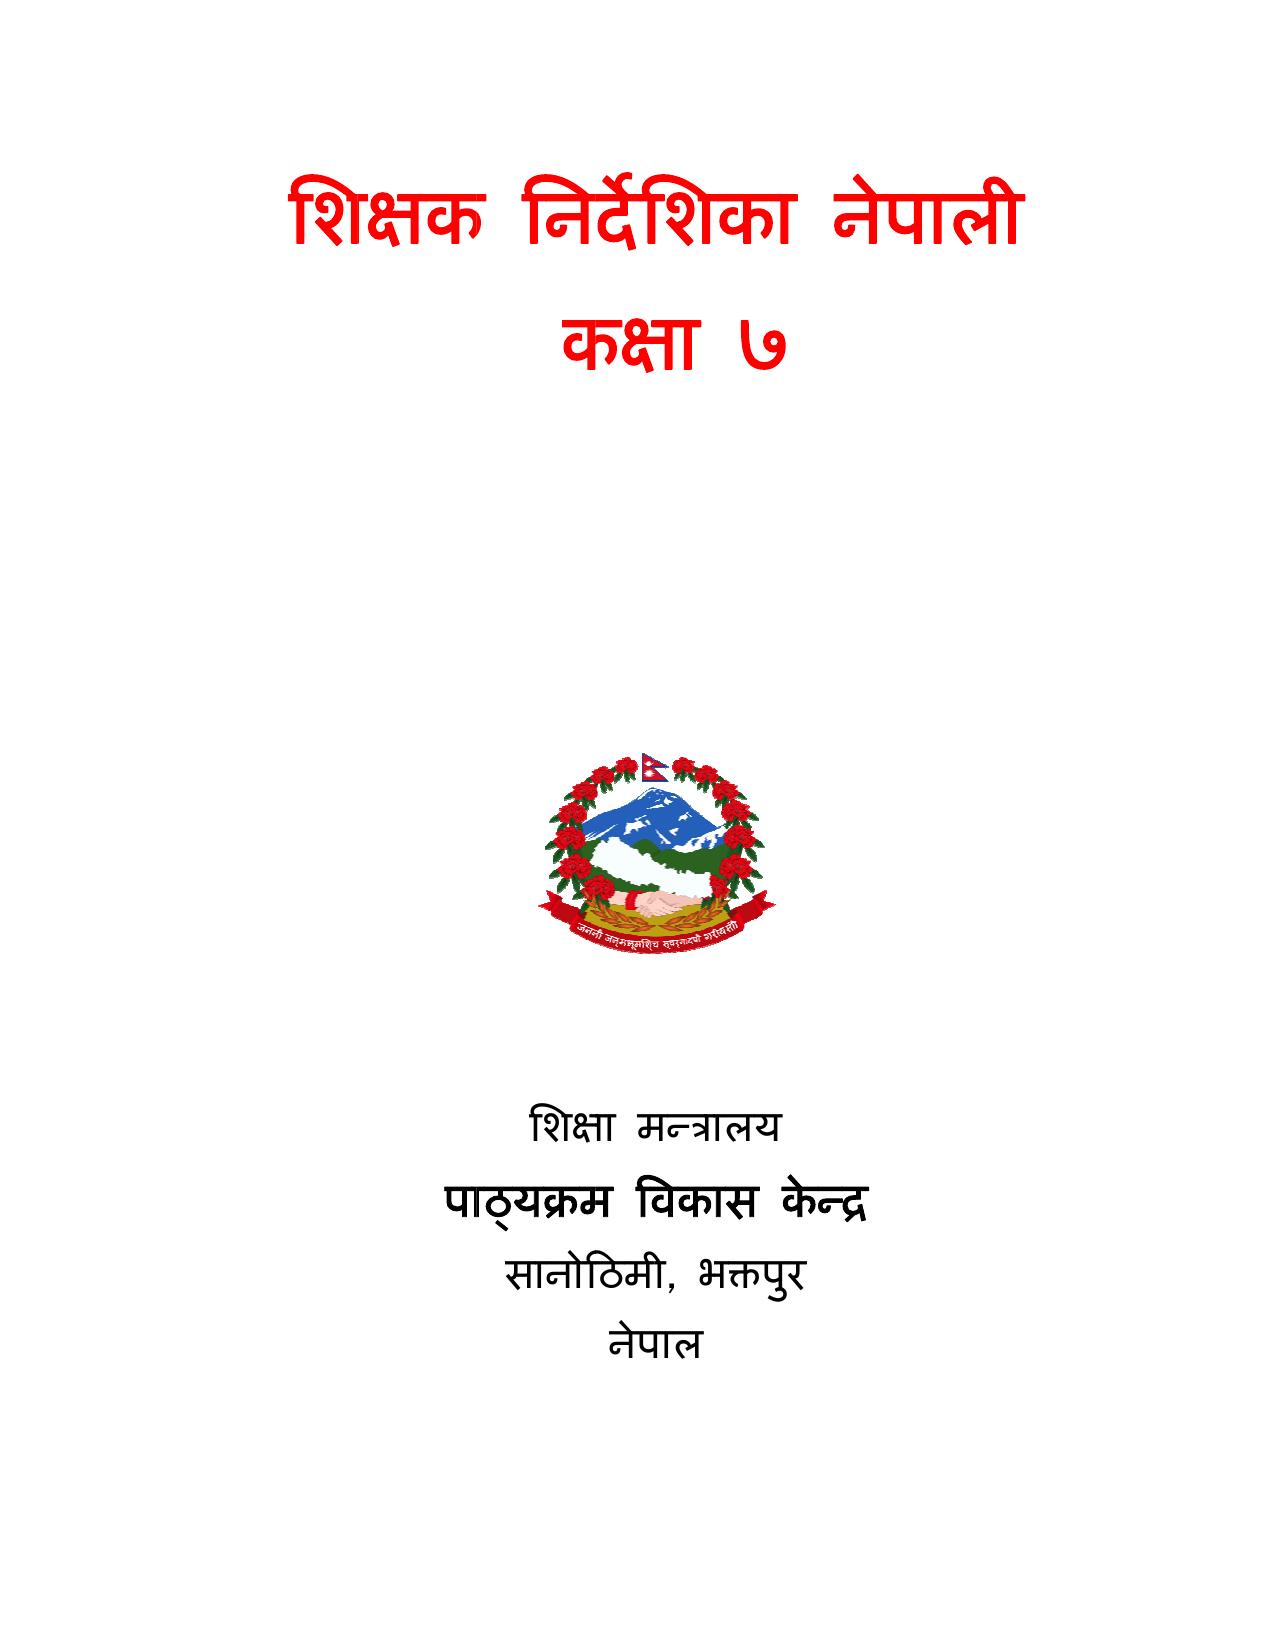 CDC 2017 - नेपाली शिक्षक निर्देशिका कक्षा ७